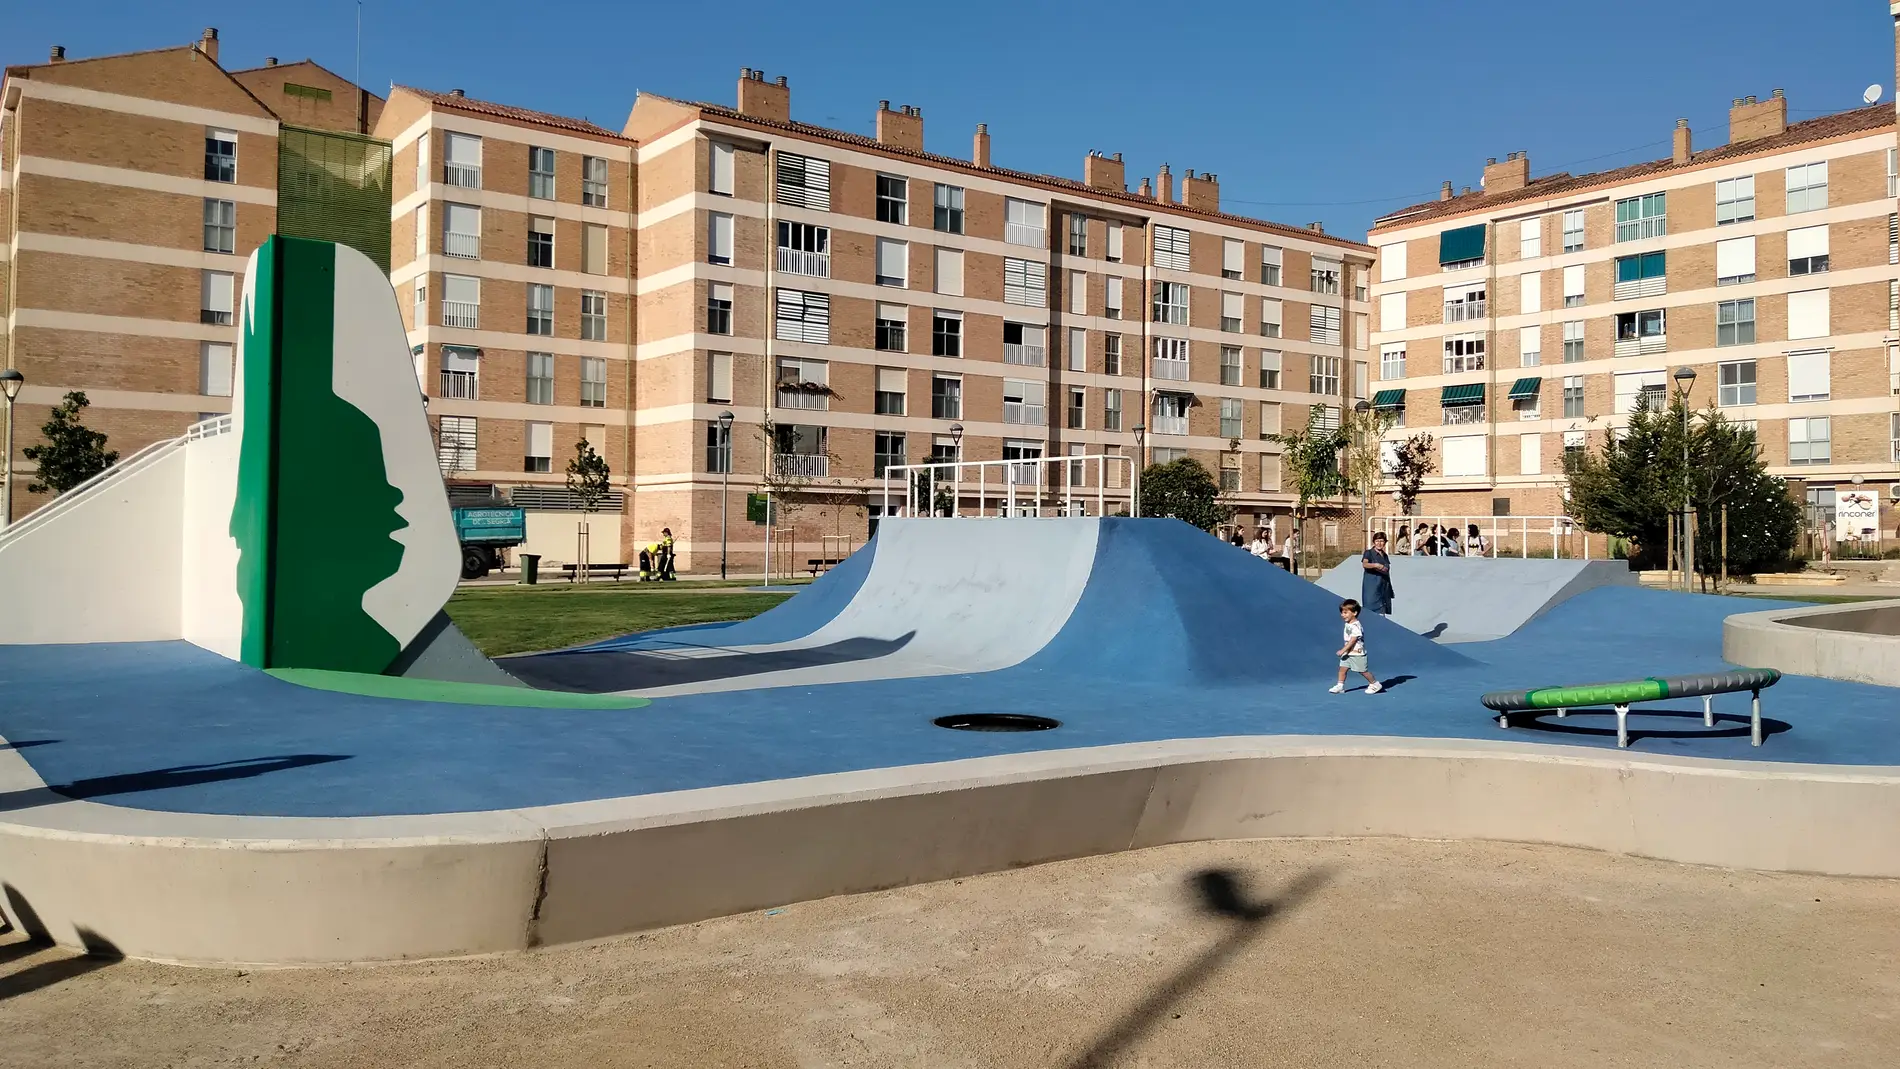 Nuevo aspecto de la zona de juegos del parque de San Martín.